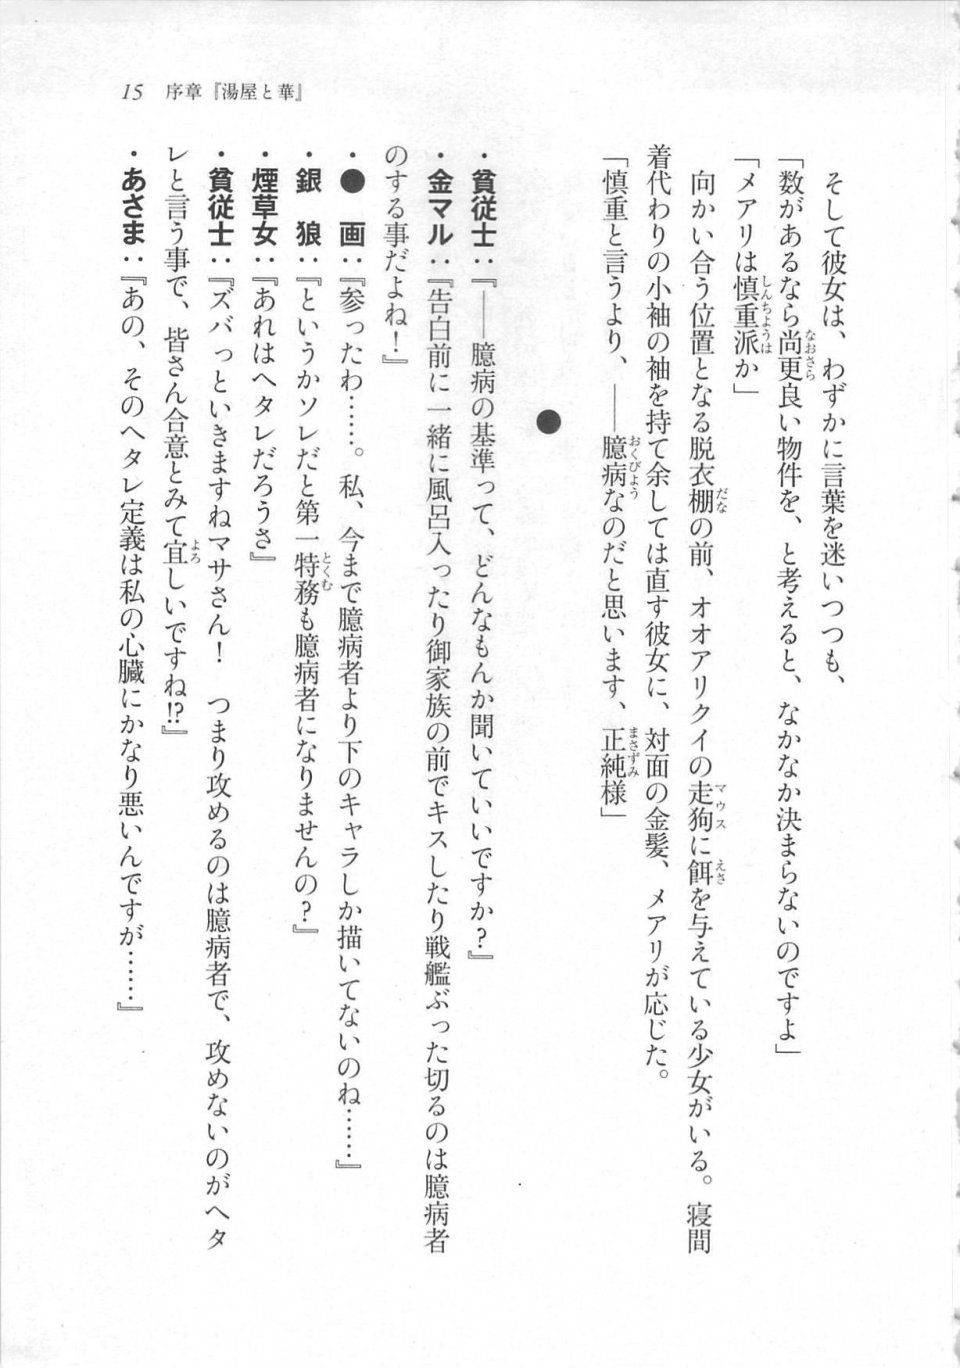 Kyoukai Senjou no Horizon LN Sidestory Vol 3 - Photo #19